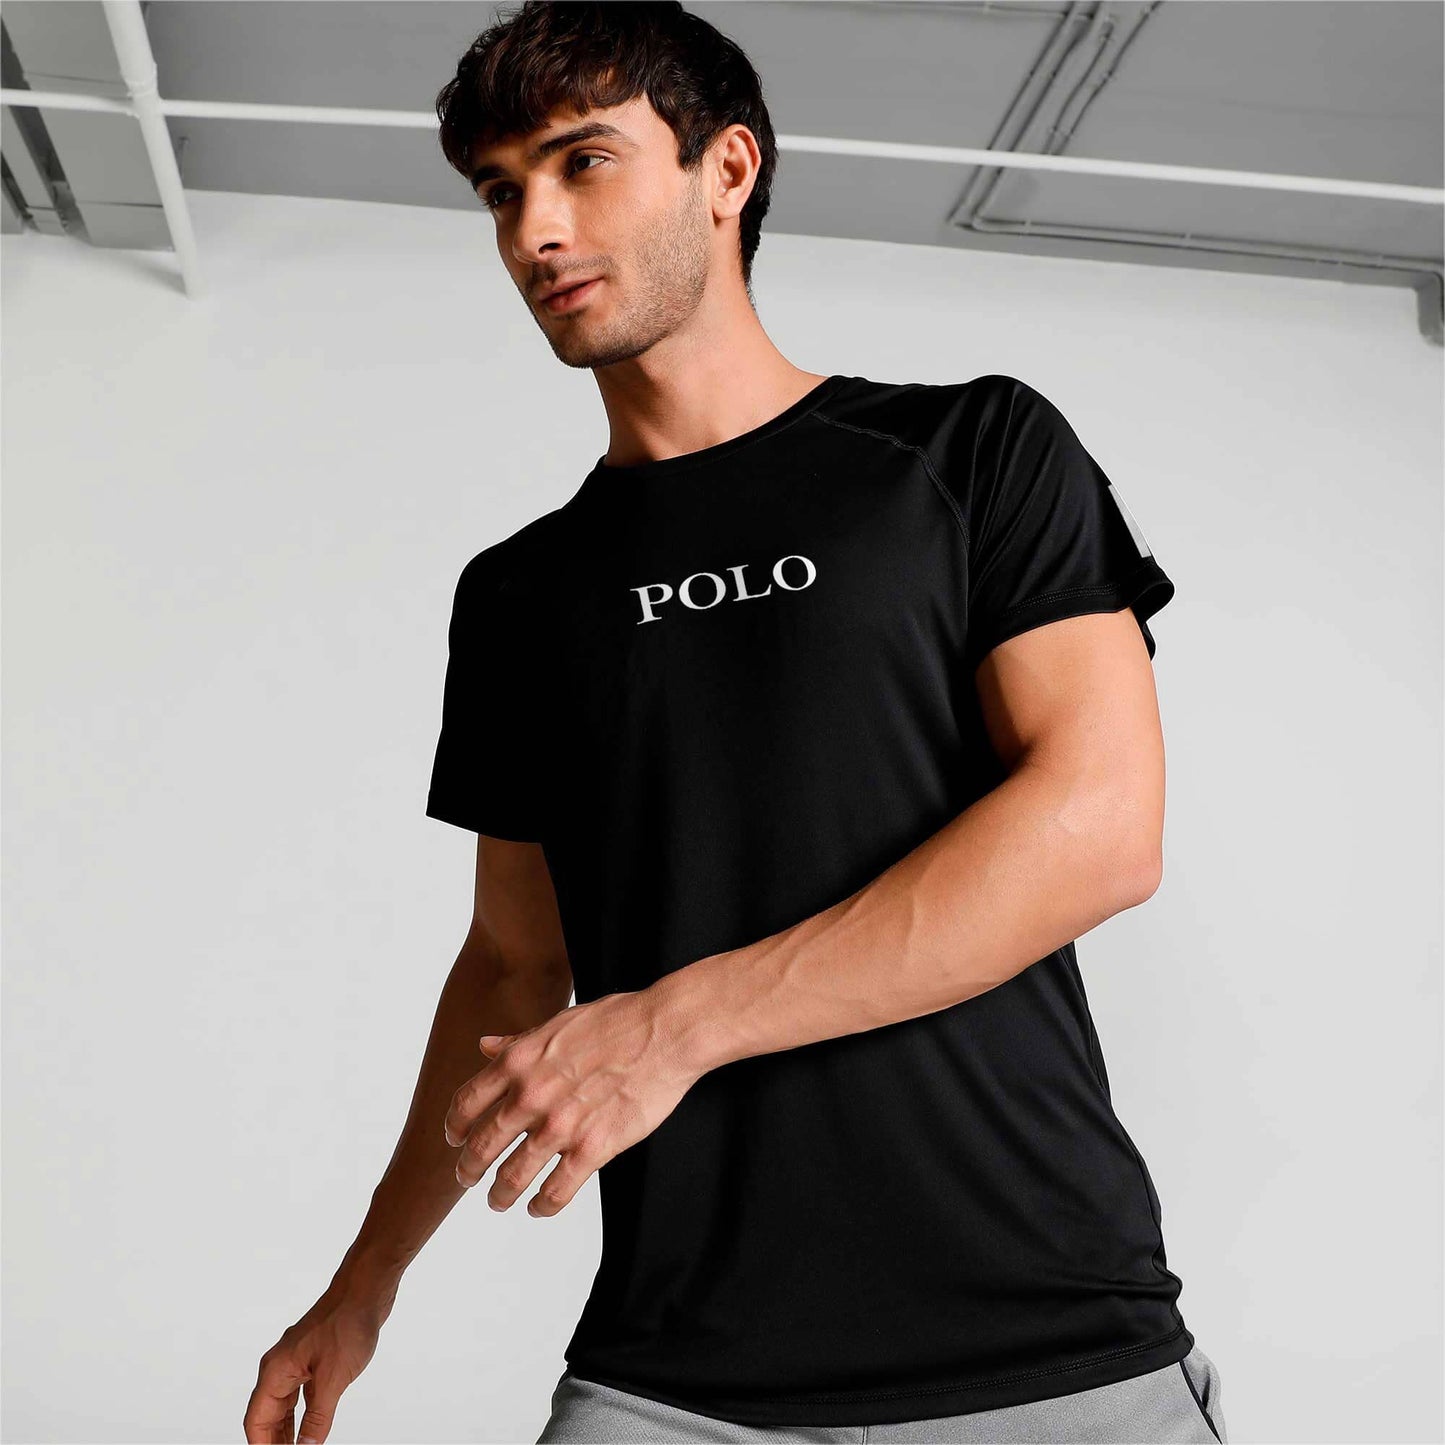 Polo Republica Men's Polo Athletic & Single Stripes Printed Raglan Activewear Tee Shirt Men's Tee Shirt Polo Republica Black S 